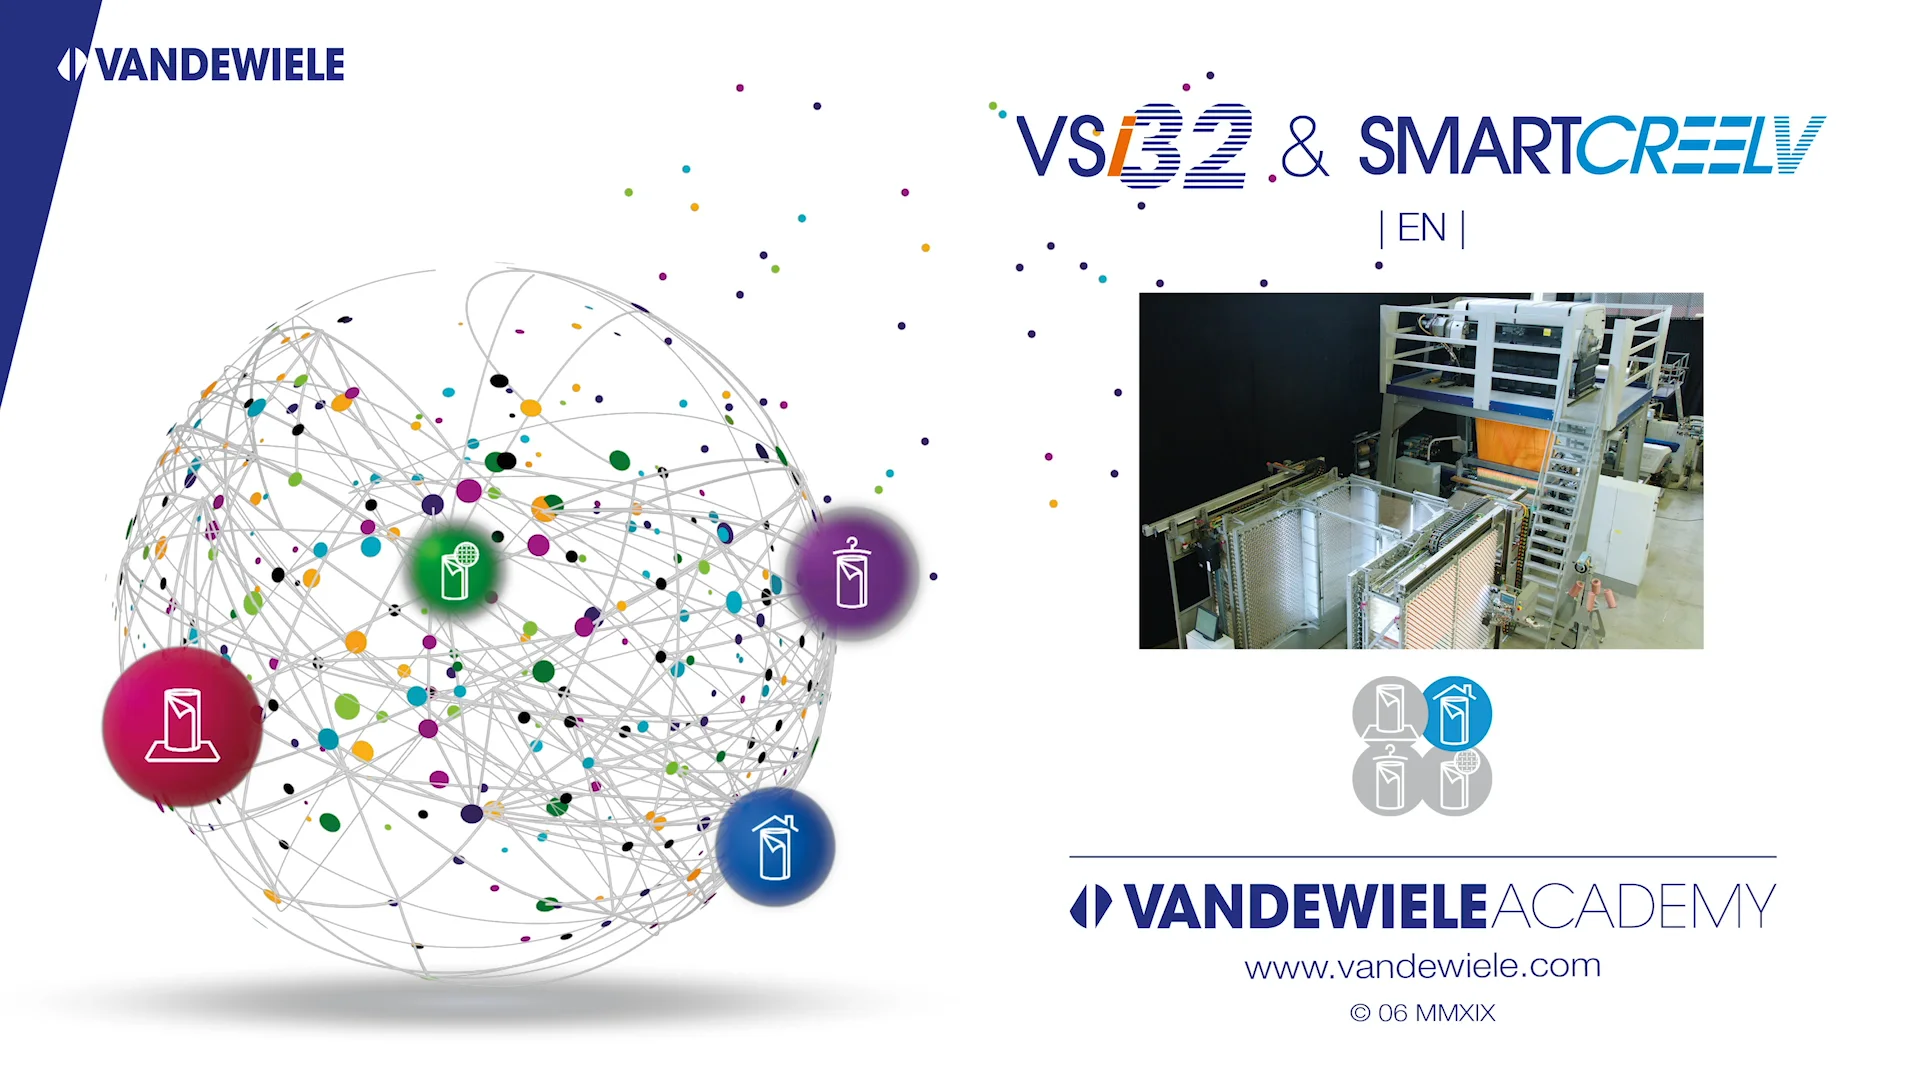 Smart Creel System, Vandewiele NV, Belgium